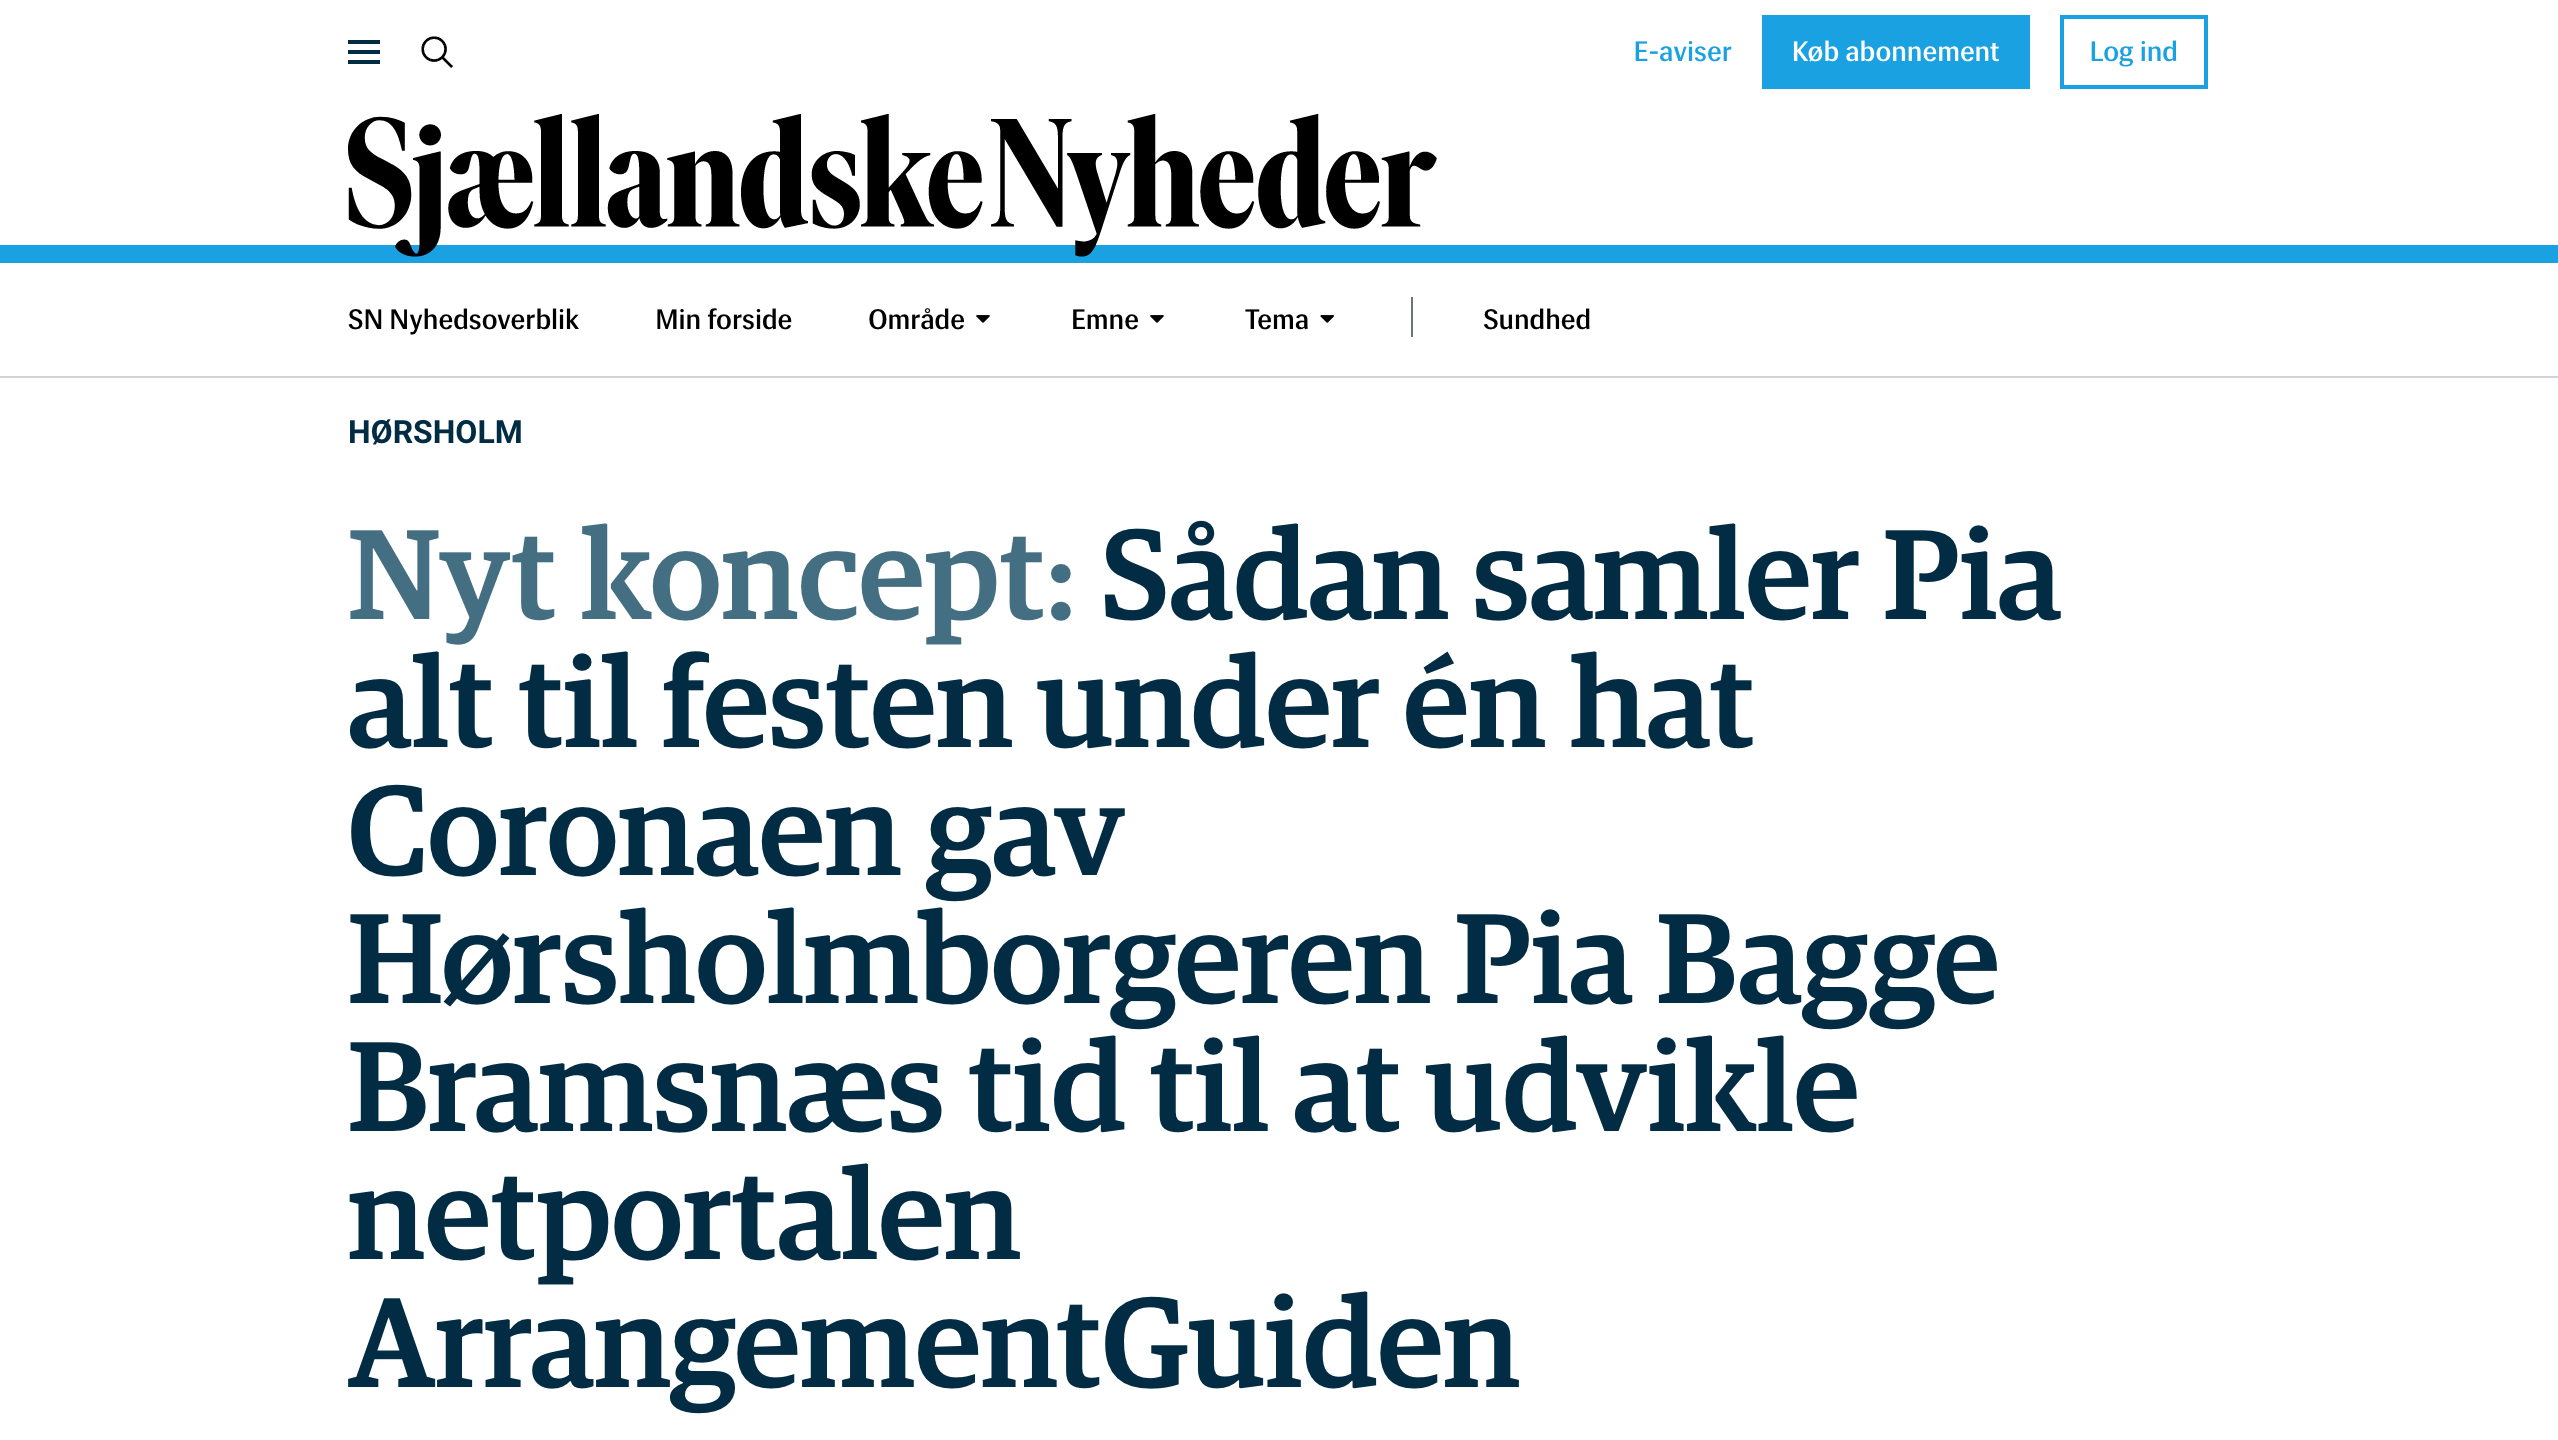 Artikel fra Sjællandske nyheder - ArrangementGuiden